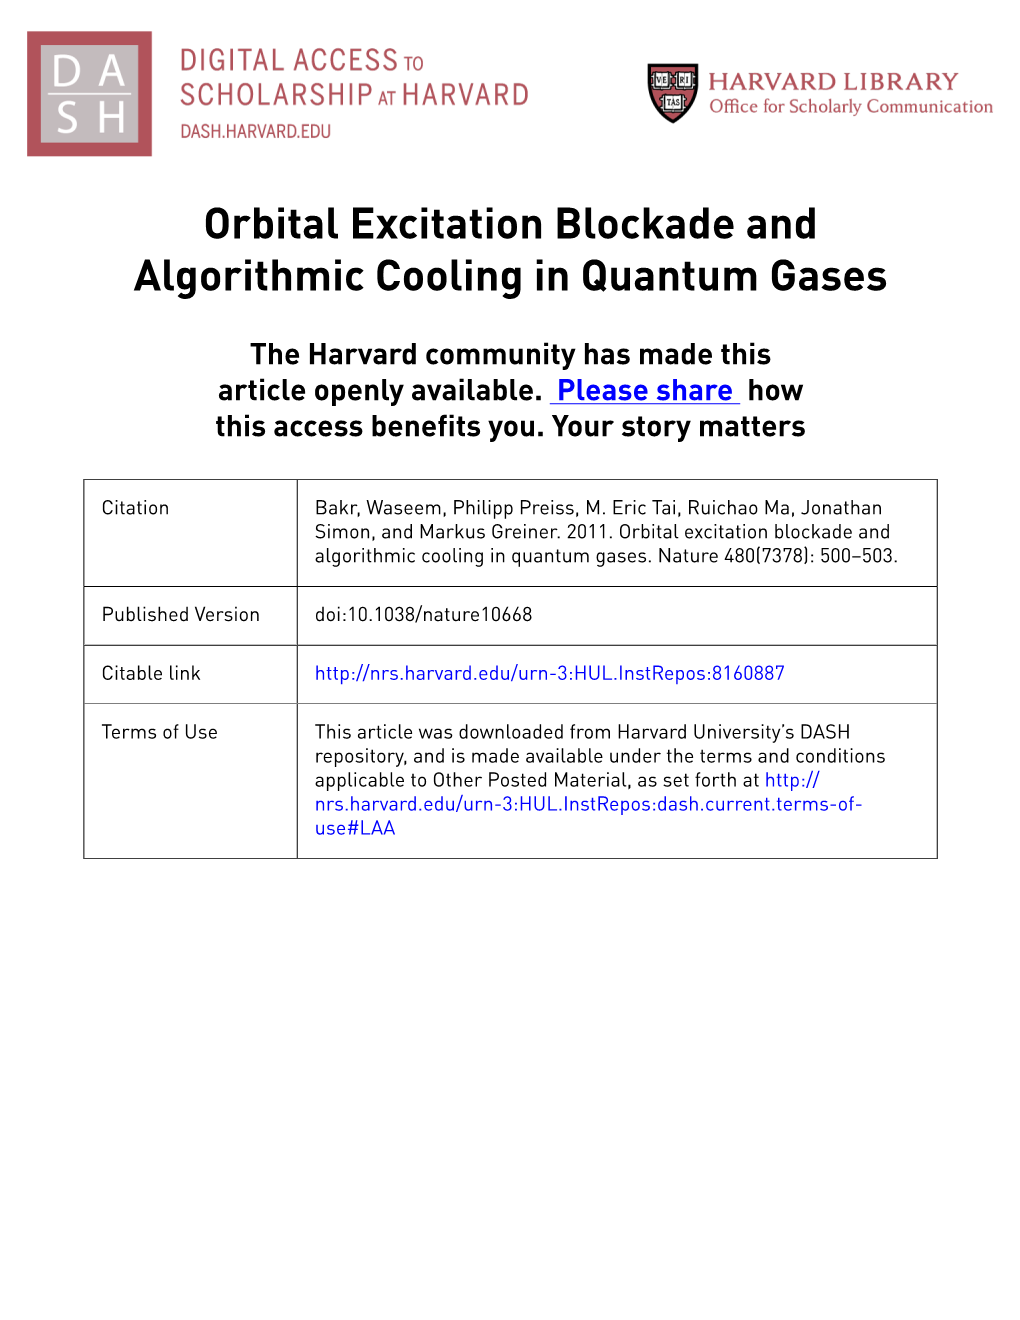 Orbital Excitation Blockade and Algorithmic Cooling in Quantum Gases